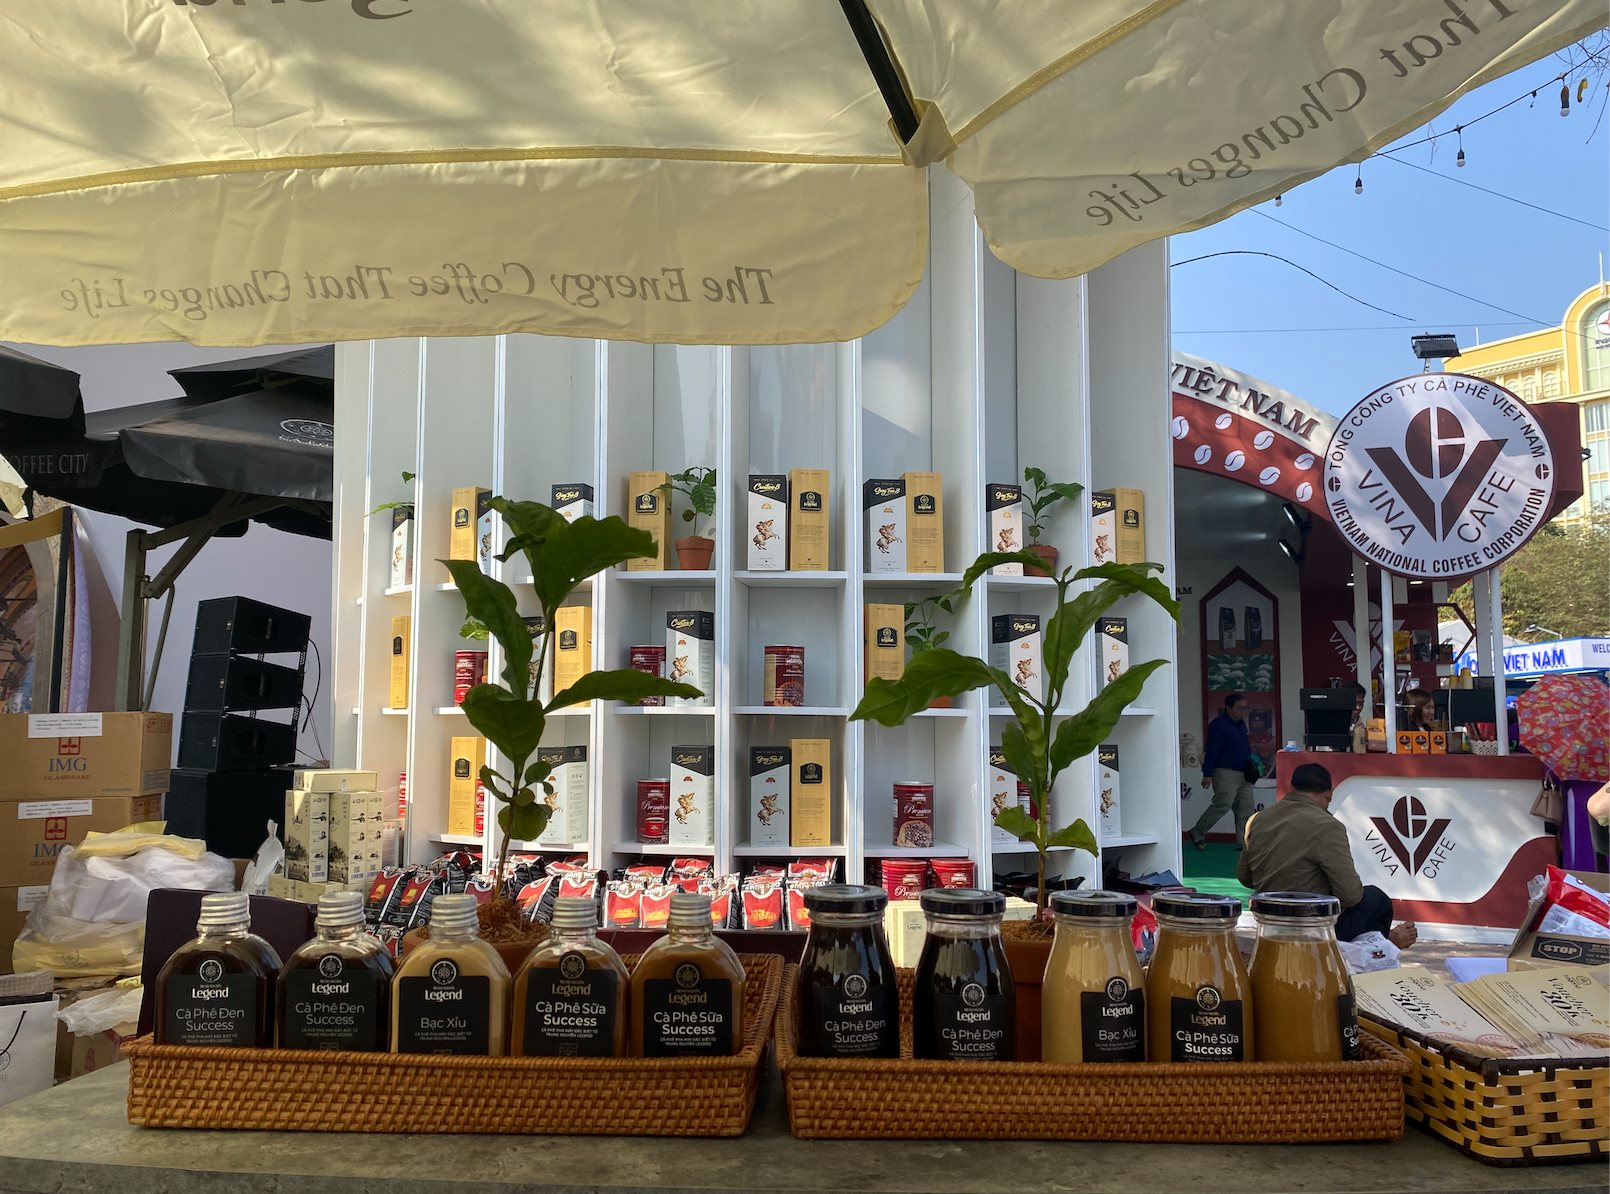 Gần 500 quán cà phê ở Đắk Lắk phục vụ miễn phí cho khách du lịch, nỗ lực đưa Buôn Ma Thuột thành điểm đến của cà phê thế giới - Ảnh 1.